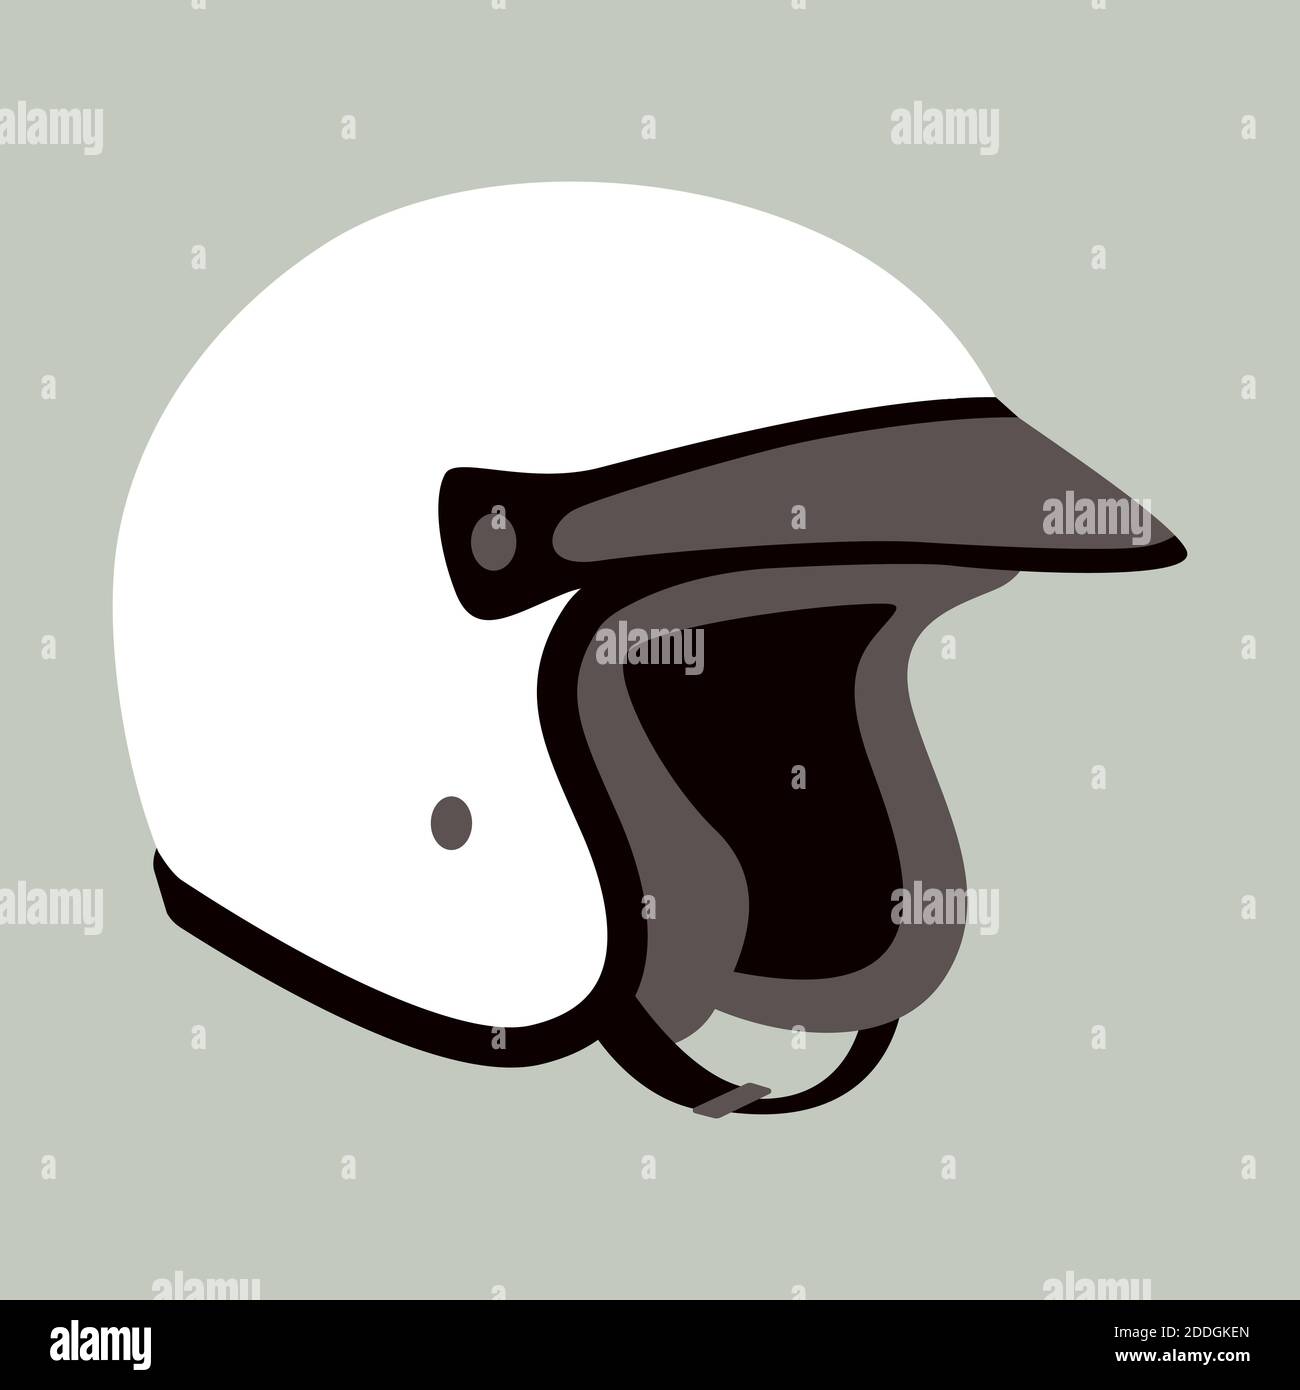 Motorradhelm, Vektor-Illustration, flacher Stil, Profilansicht  Stockfotografie - Alamy